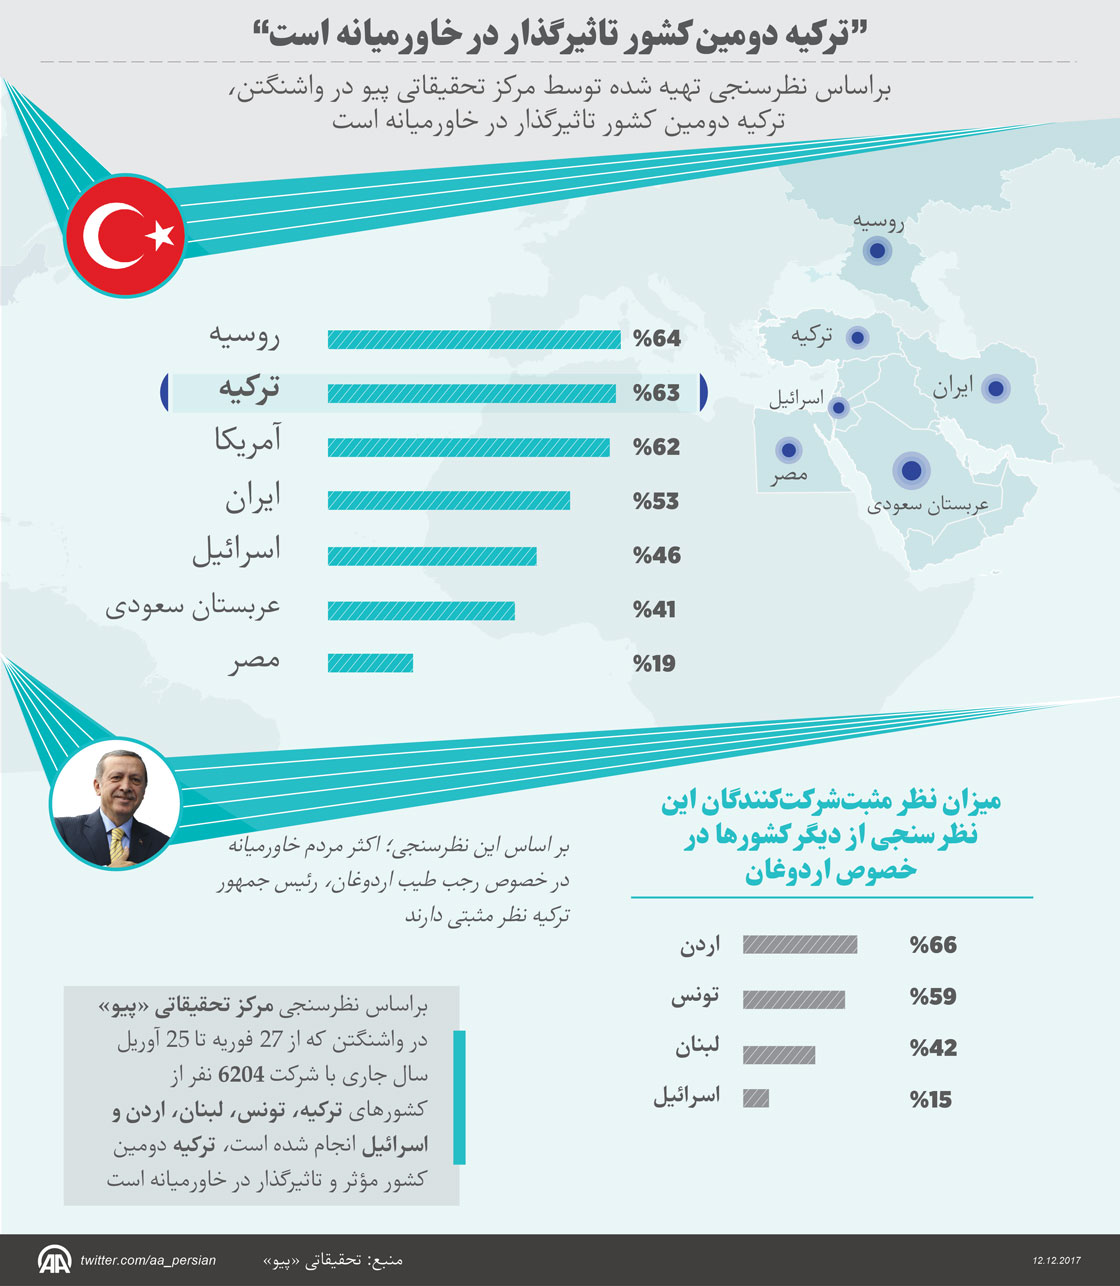 “ترکیه دومین کشور تاثیرگذار در خاورمیانه است”